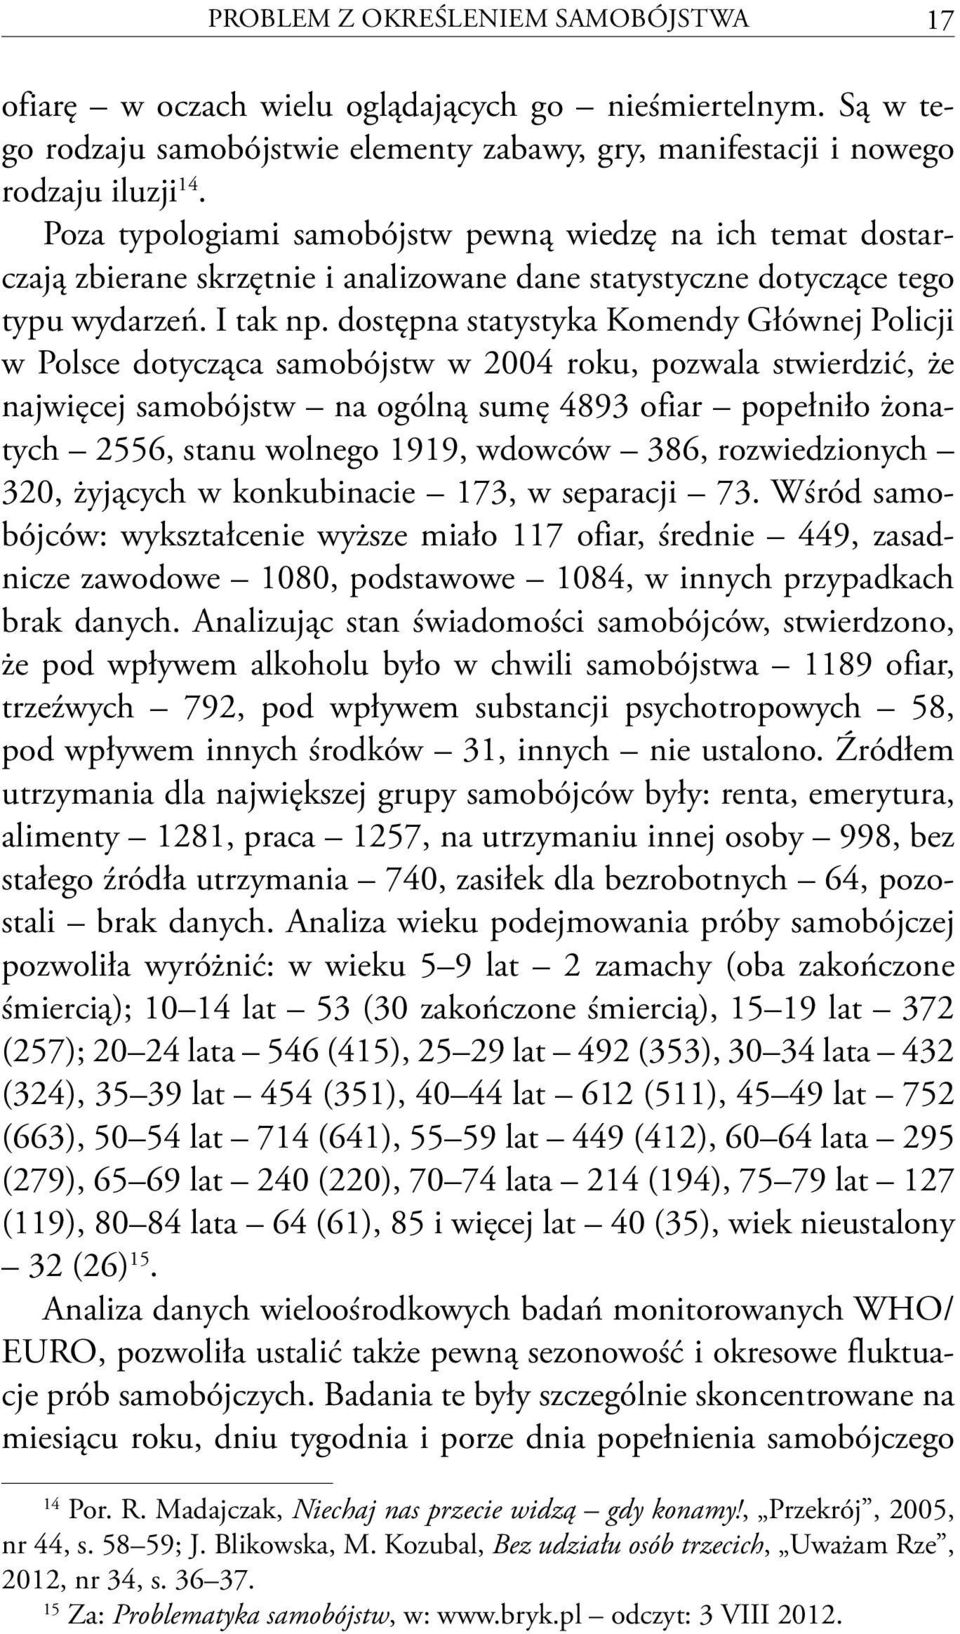 dostępna statystyka Komendy Głównej Policji w Polsce dotycząca samobójstw w 2004 roku, pozwala stwierdzić, że najwięcej samobójstw na ogólną sumę 4893 ofiar popełniło żonatych 2556, stanu wolnego